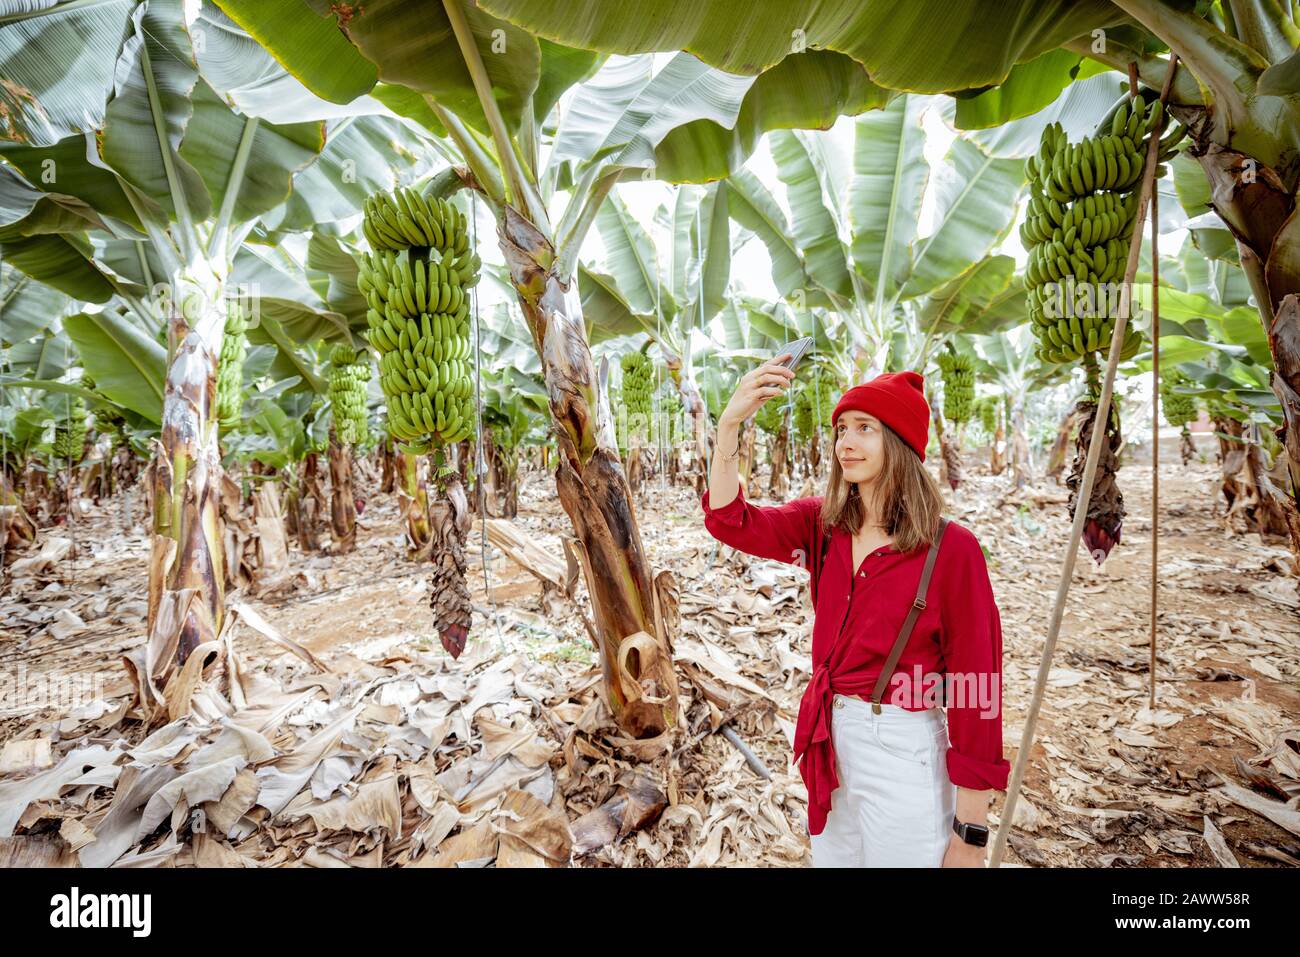 Frau als Touristin, die in Rot gekleidet ist und Bananenplantage erkundet, fotografiert auf Telefon reife Bananenzweige. Konzept eines grünen Tourismus und exotische Früchte produzieren Stockfoto